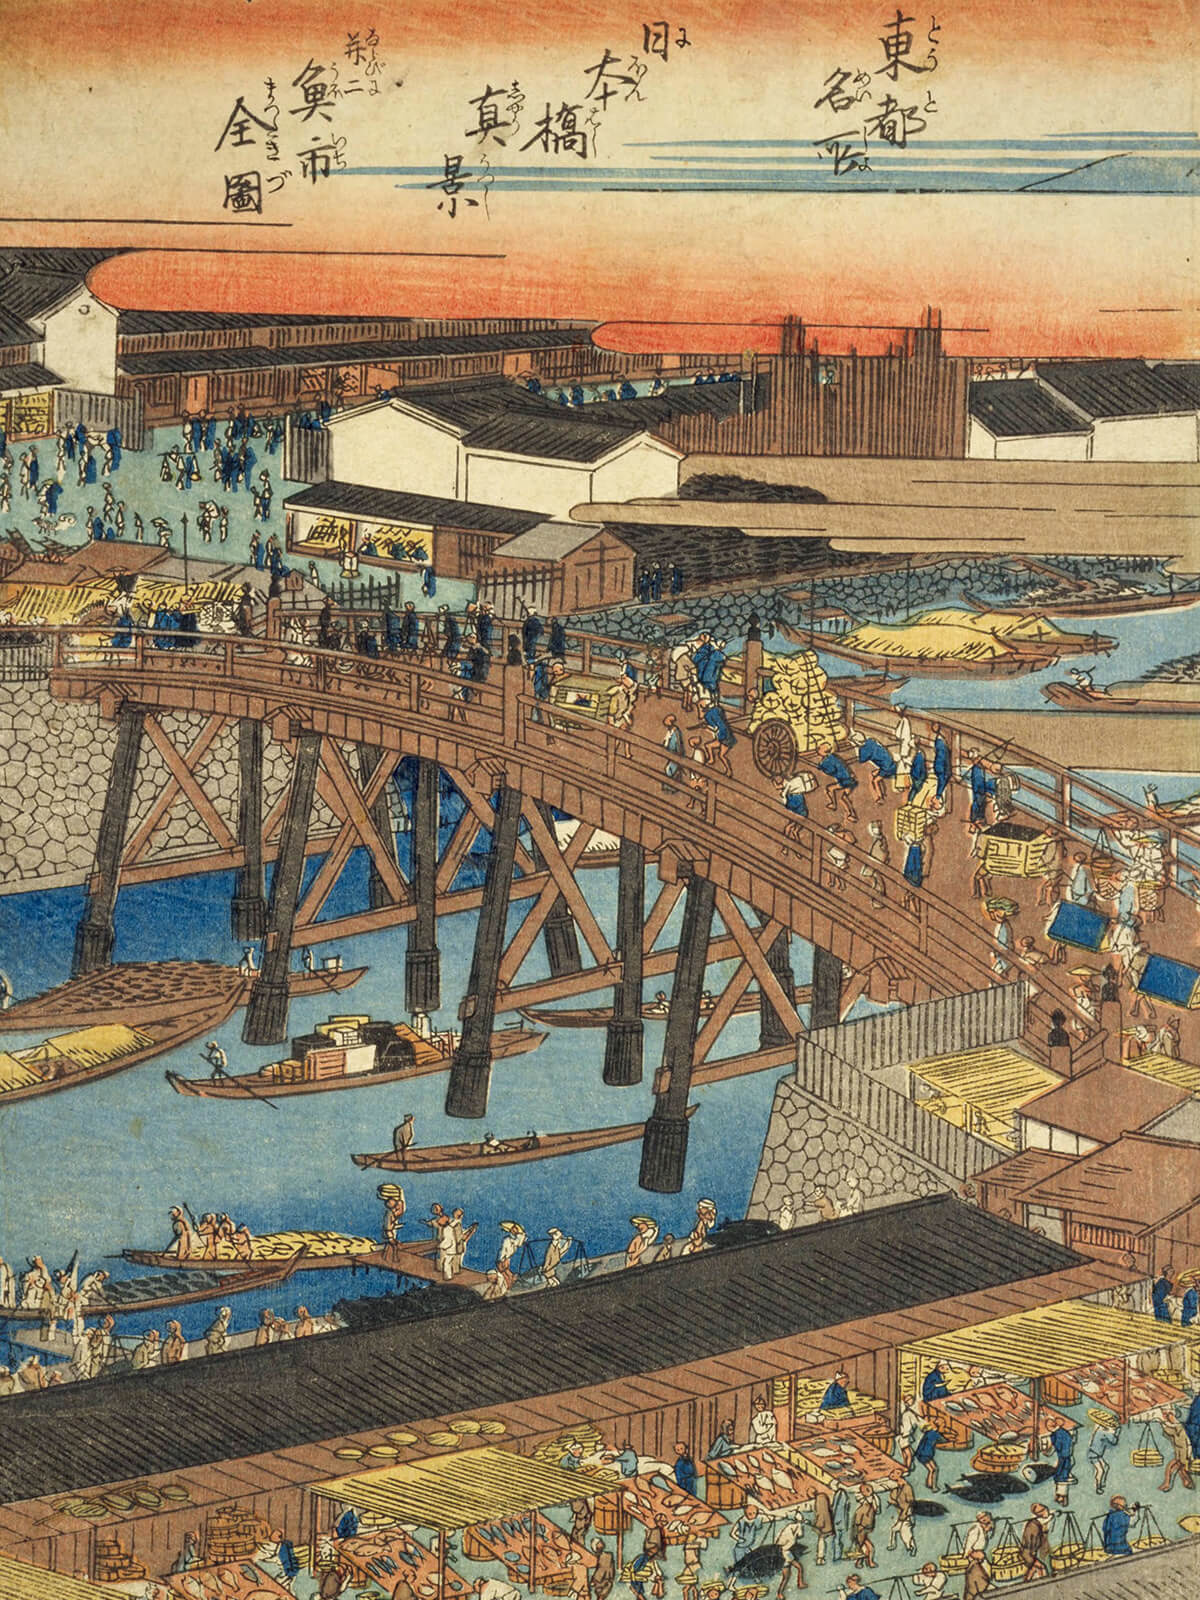 一立斎広重が描いた「日本橋真景并ニ魚市全図」の一部分